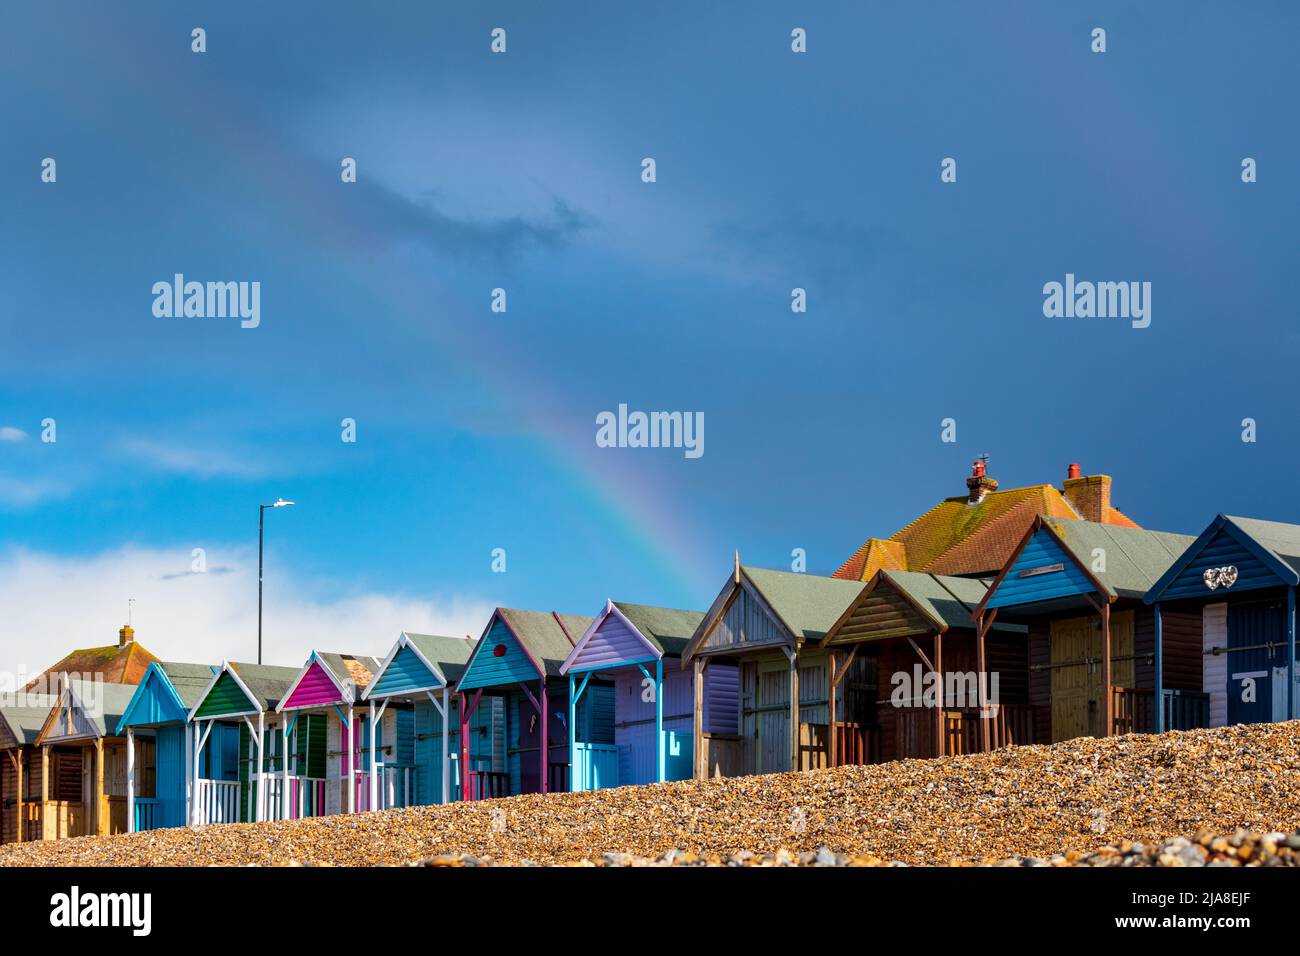 Ein Regenbogen über einer Reihe traditioneller britischer Strandhütten, ein kürzlich in Netflix' kommendem romantischen Teenager-Drama „Heartstopper“ gesehenes Drehort. Stockfoto